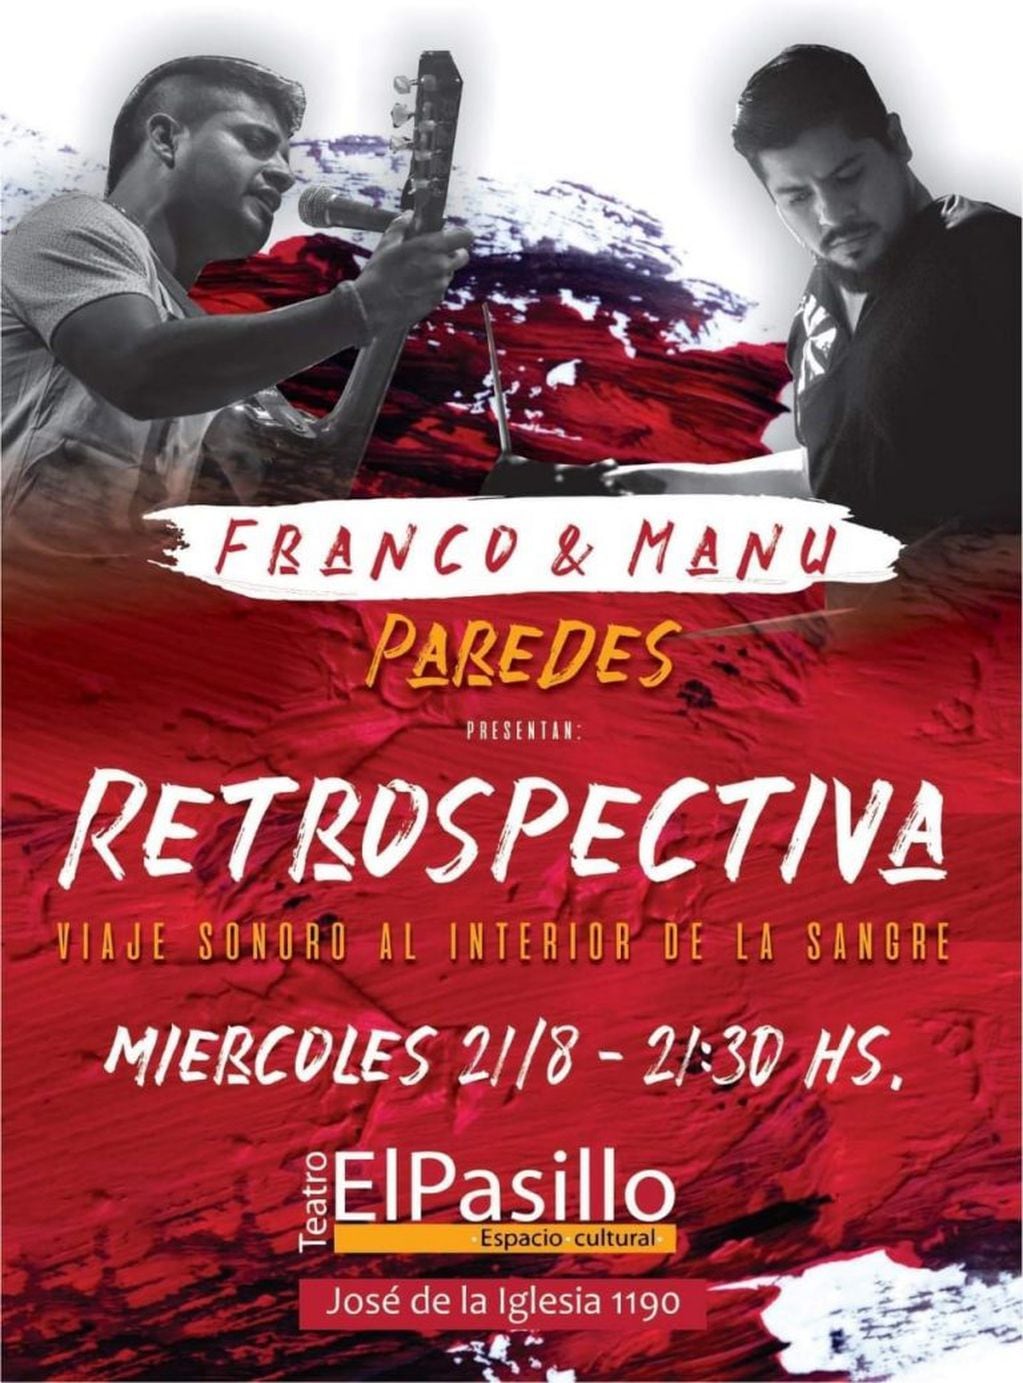 Afiche promocional del espectáculo anunciado para el próximo miércoles en el teatro El Pasillo.